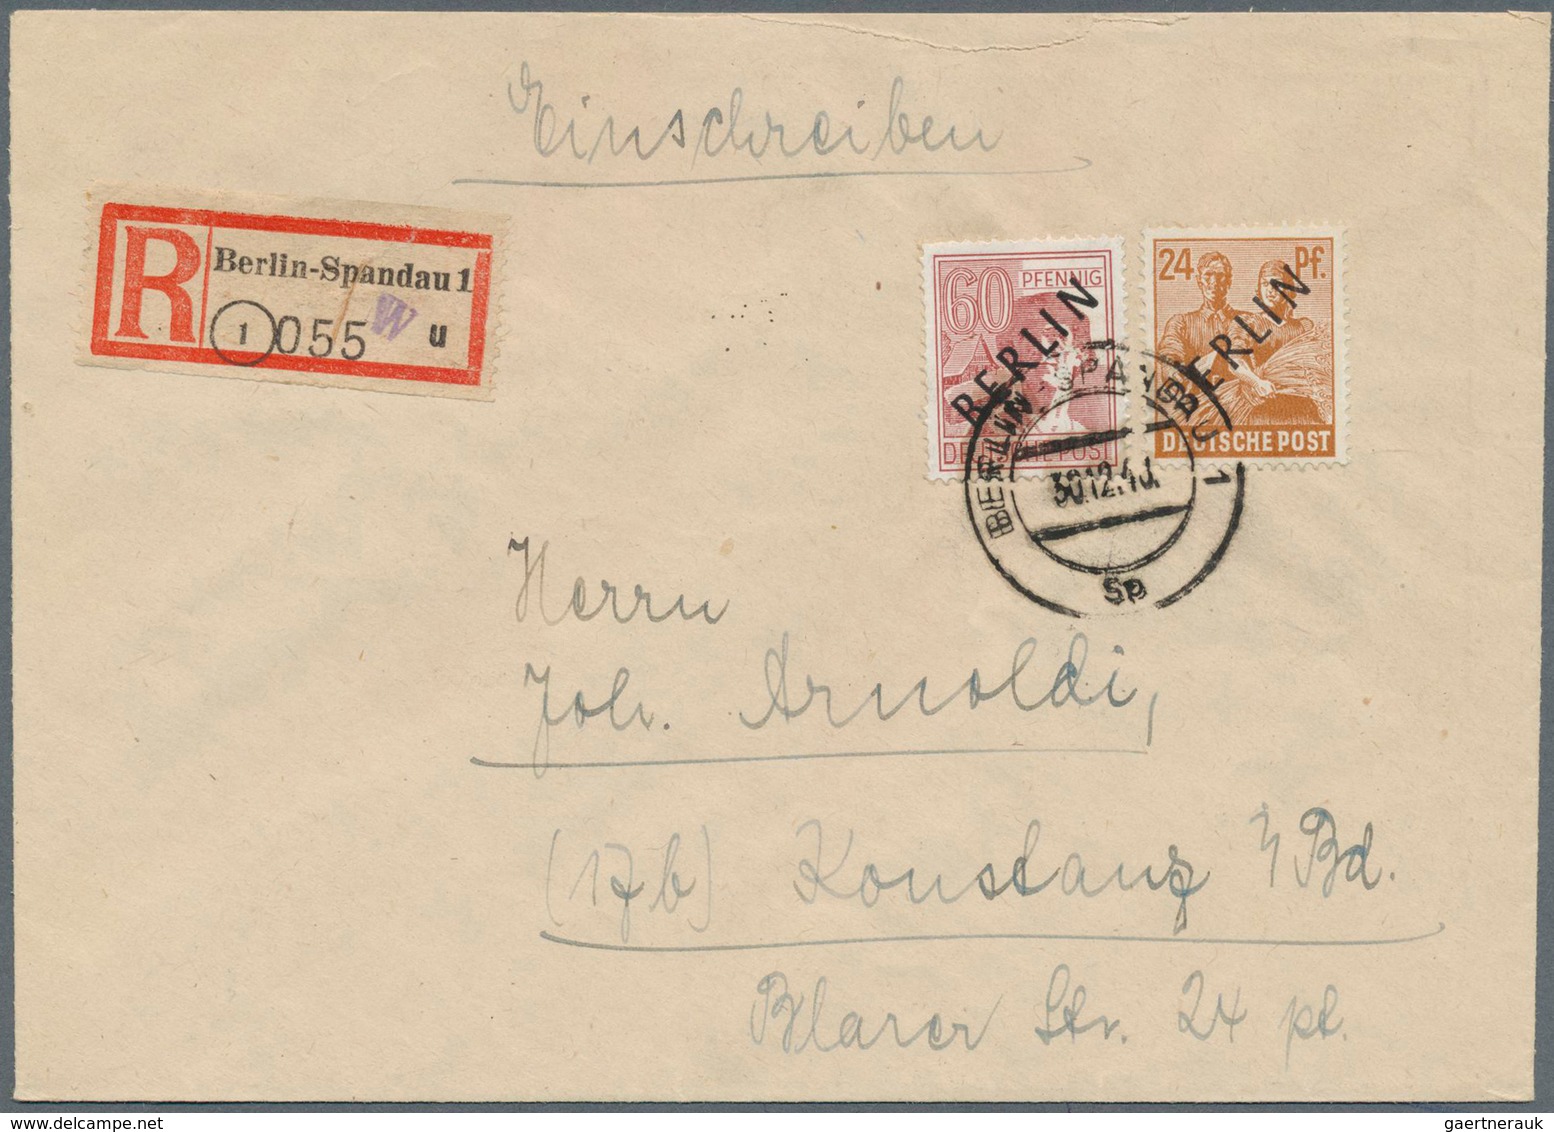 Berlin: 1948: 24 Und 40 Pf Scharzaufdruck Zusammen Auf Brief Ab Berlin-Spandau Vom 30.12.48 Nach Kon - Covers & Documents